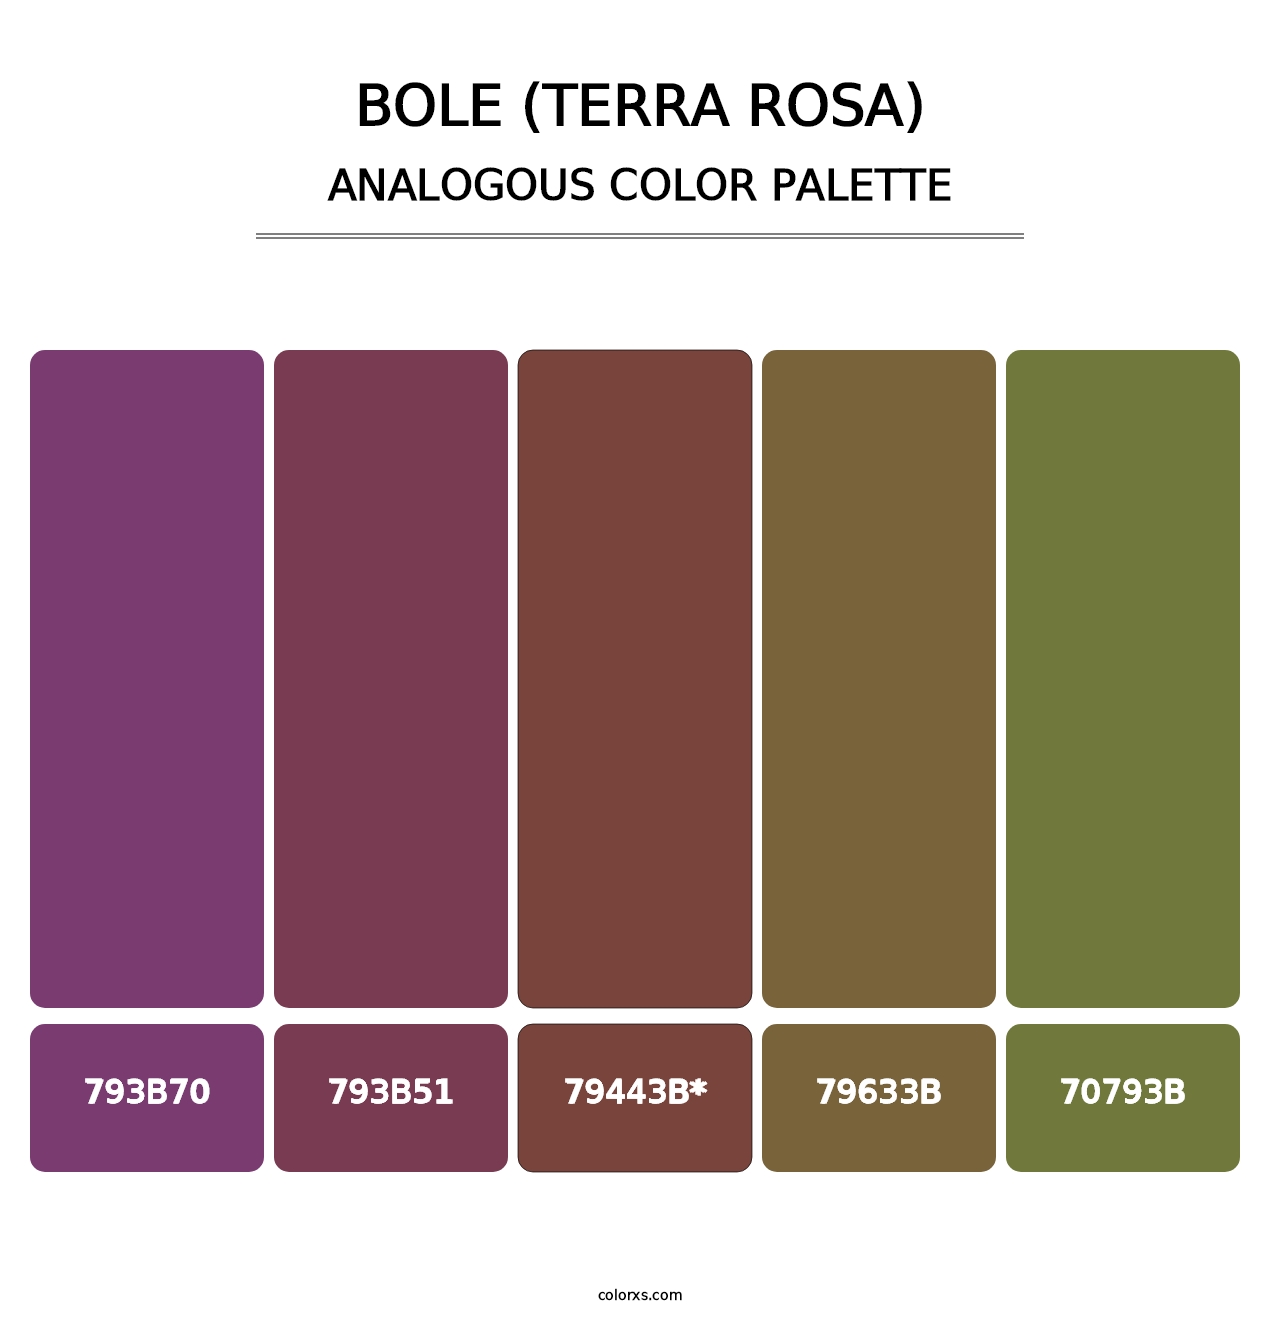 Bole (Terra Rosa) - Analogous Color Palette